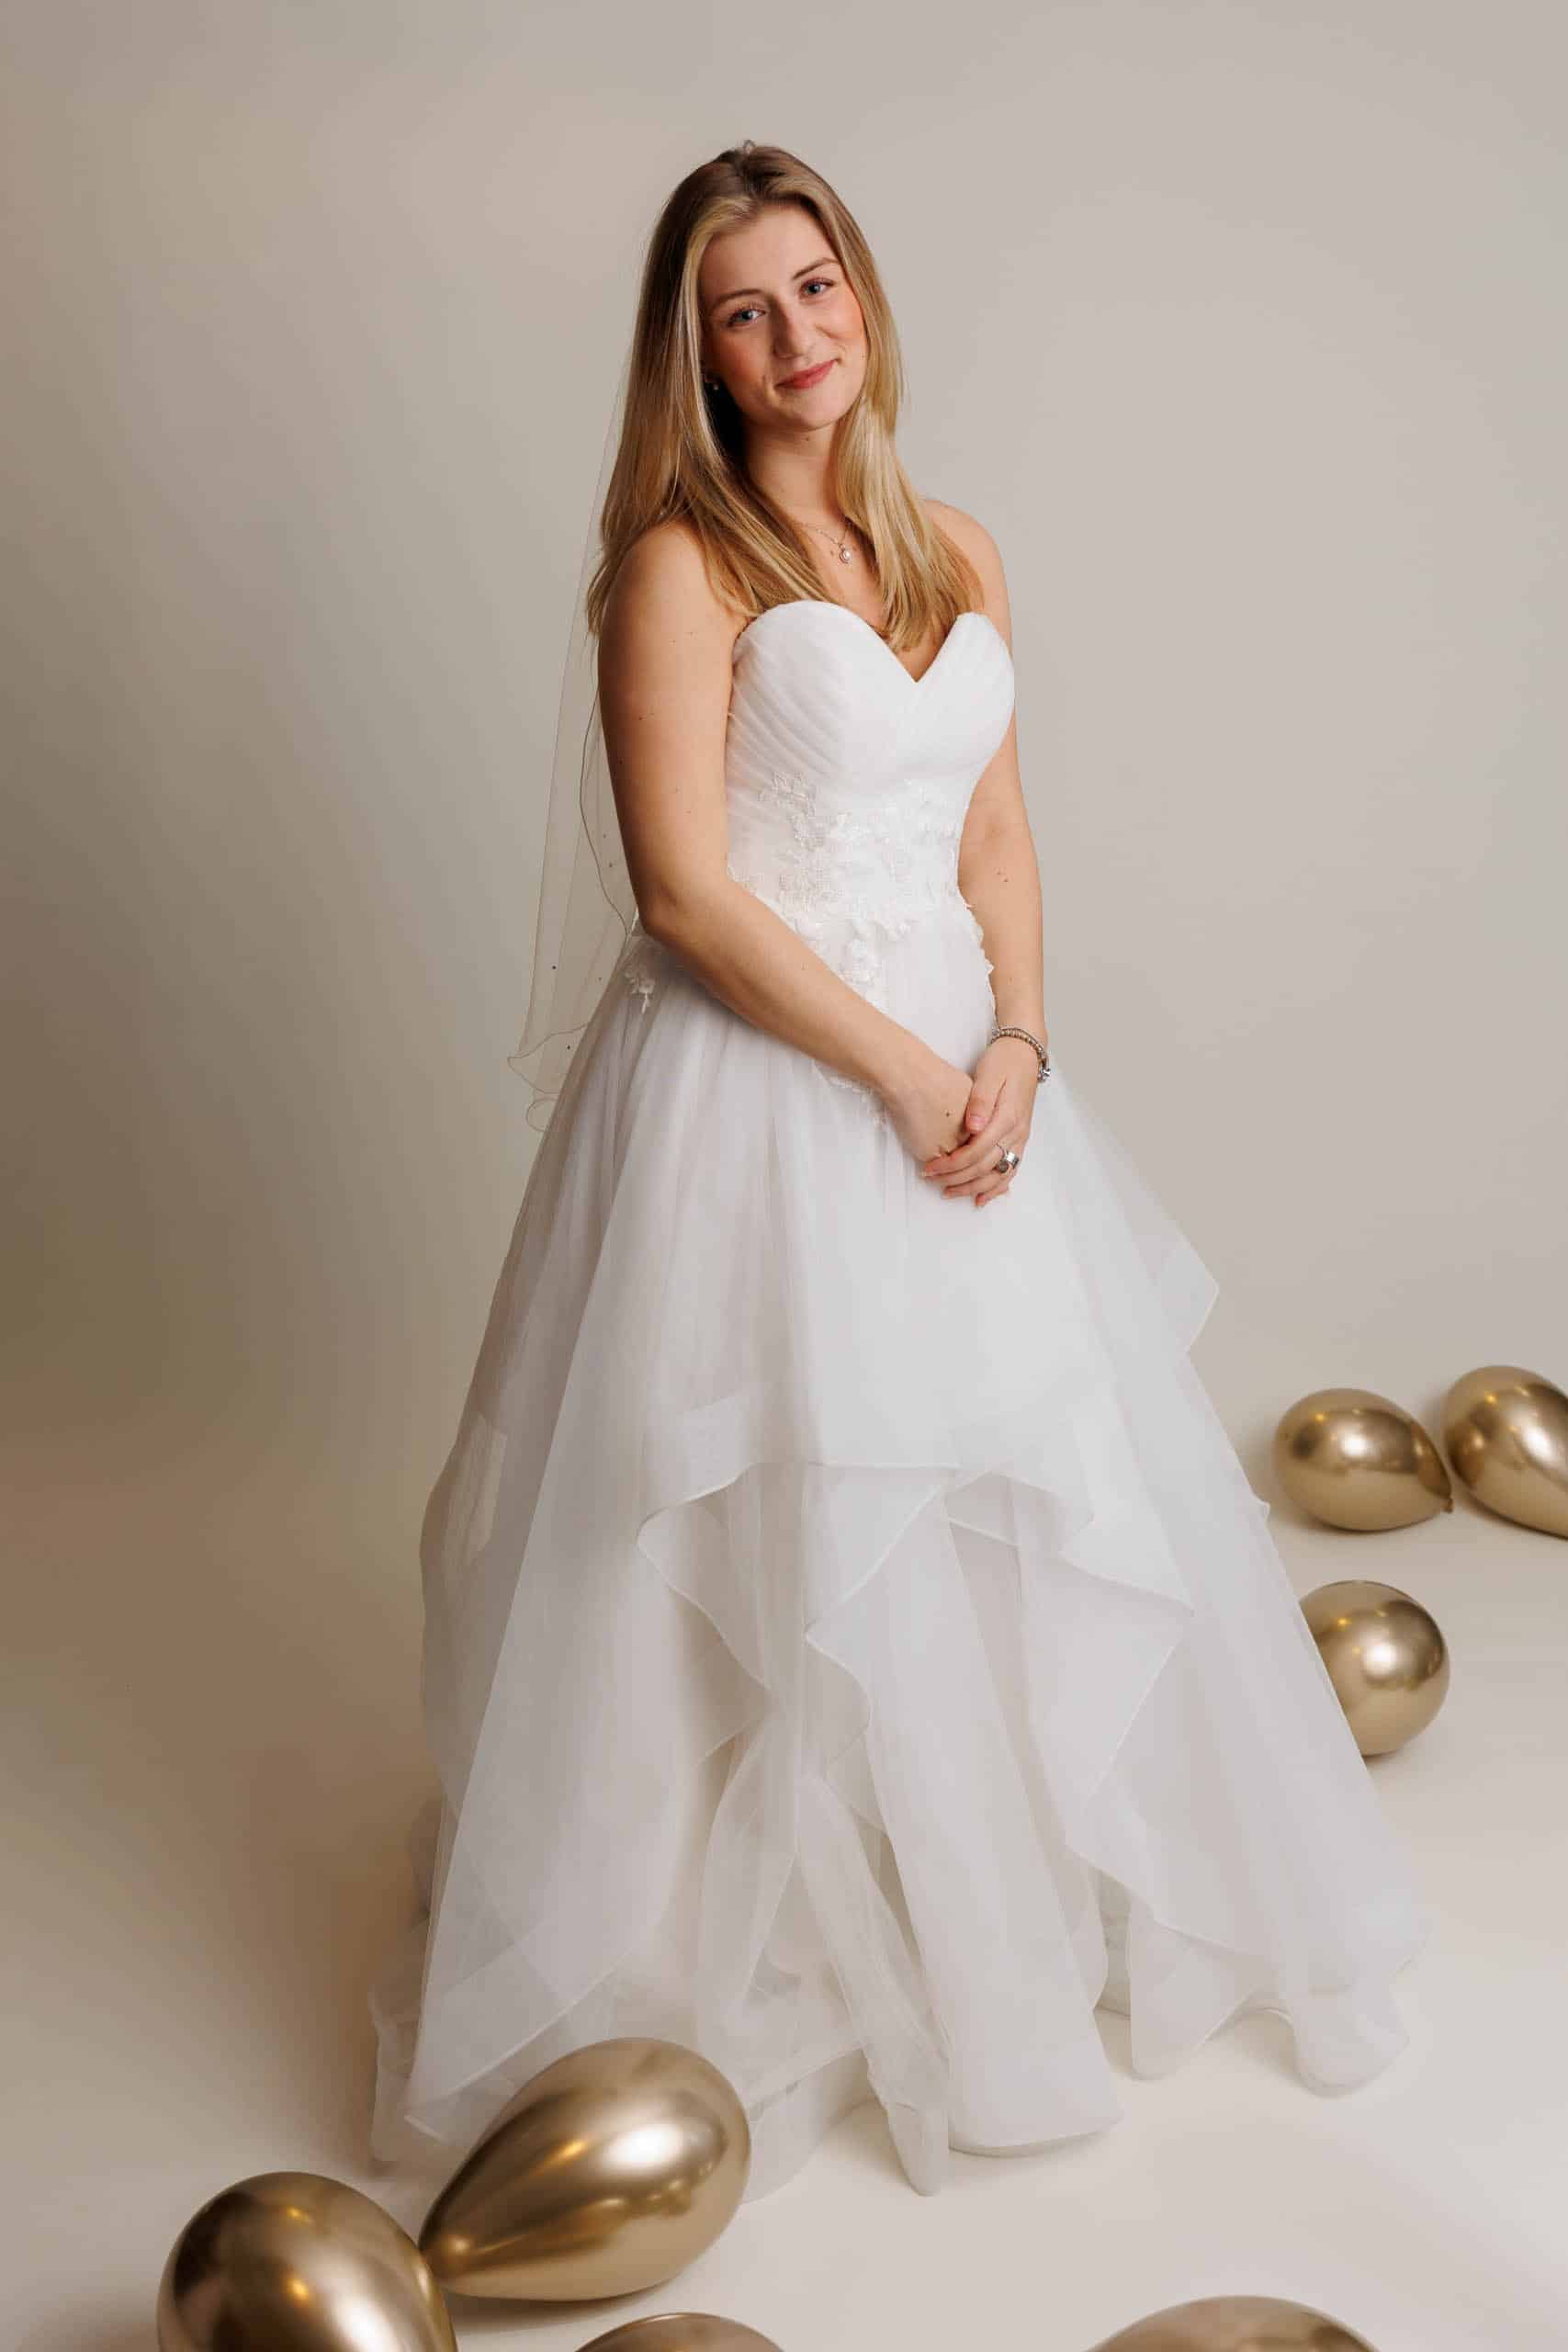 Een bruid in een trouwjurk poseert voor ballonnen terwijl ze voor de lol trouwjurken past.